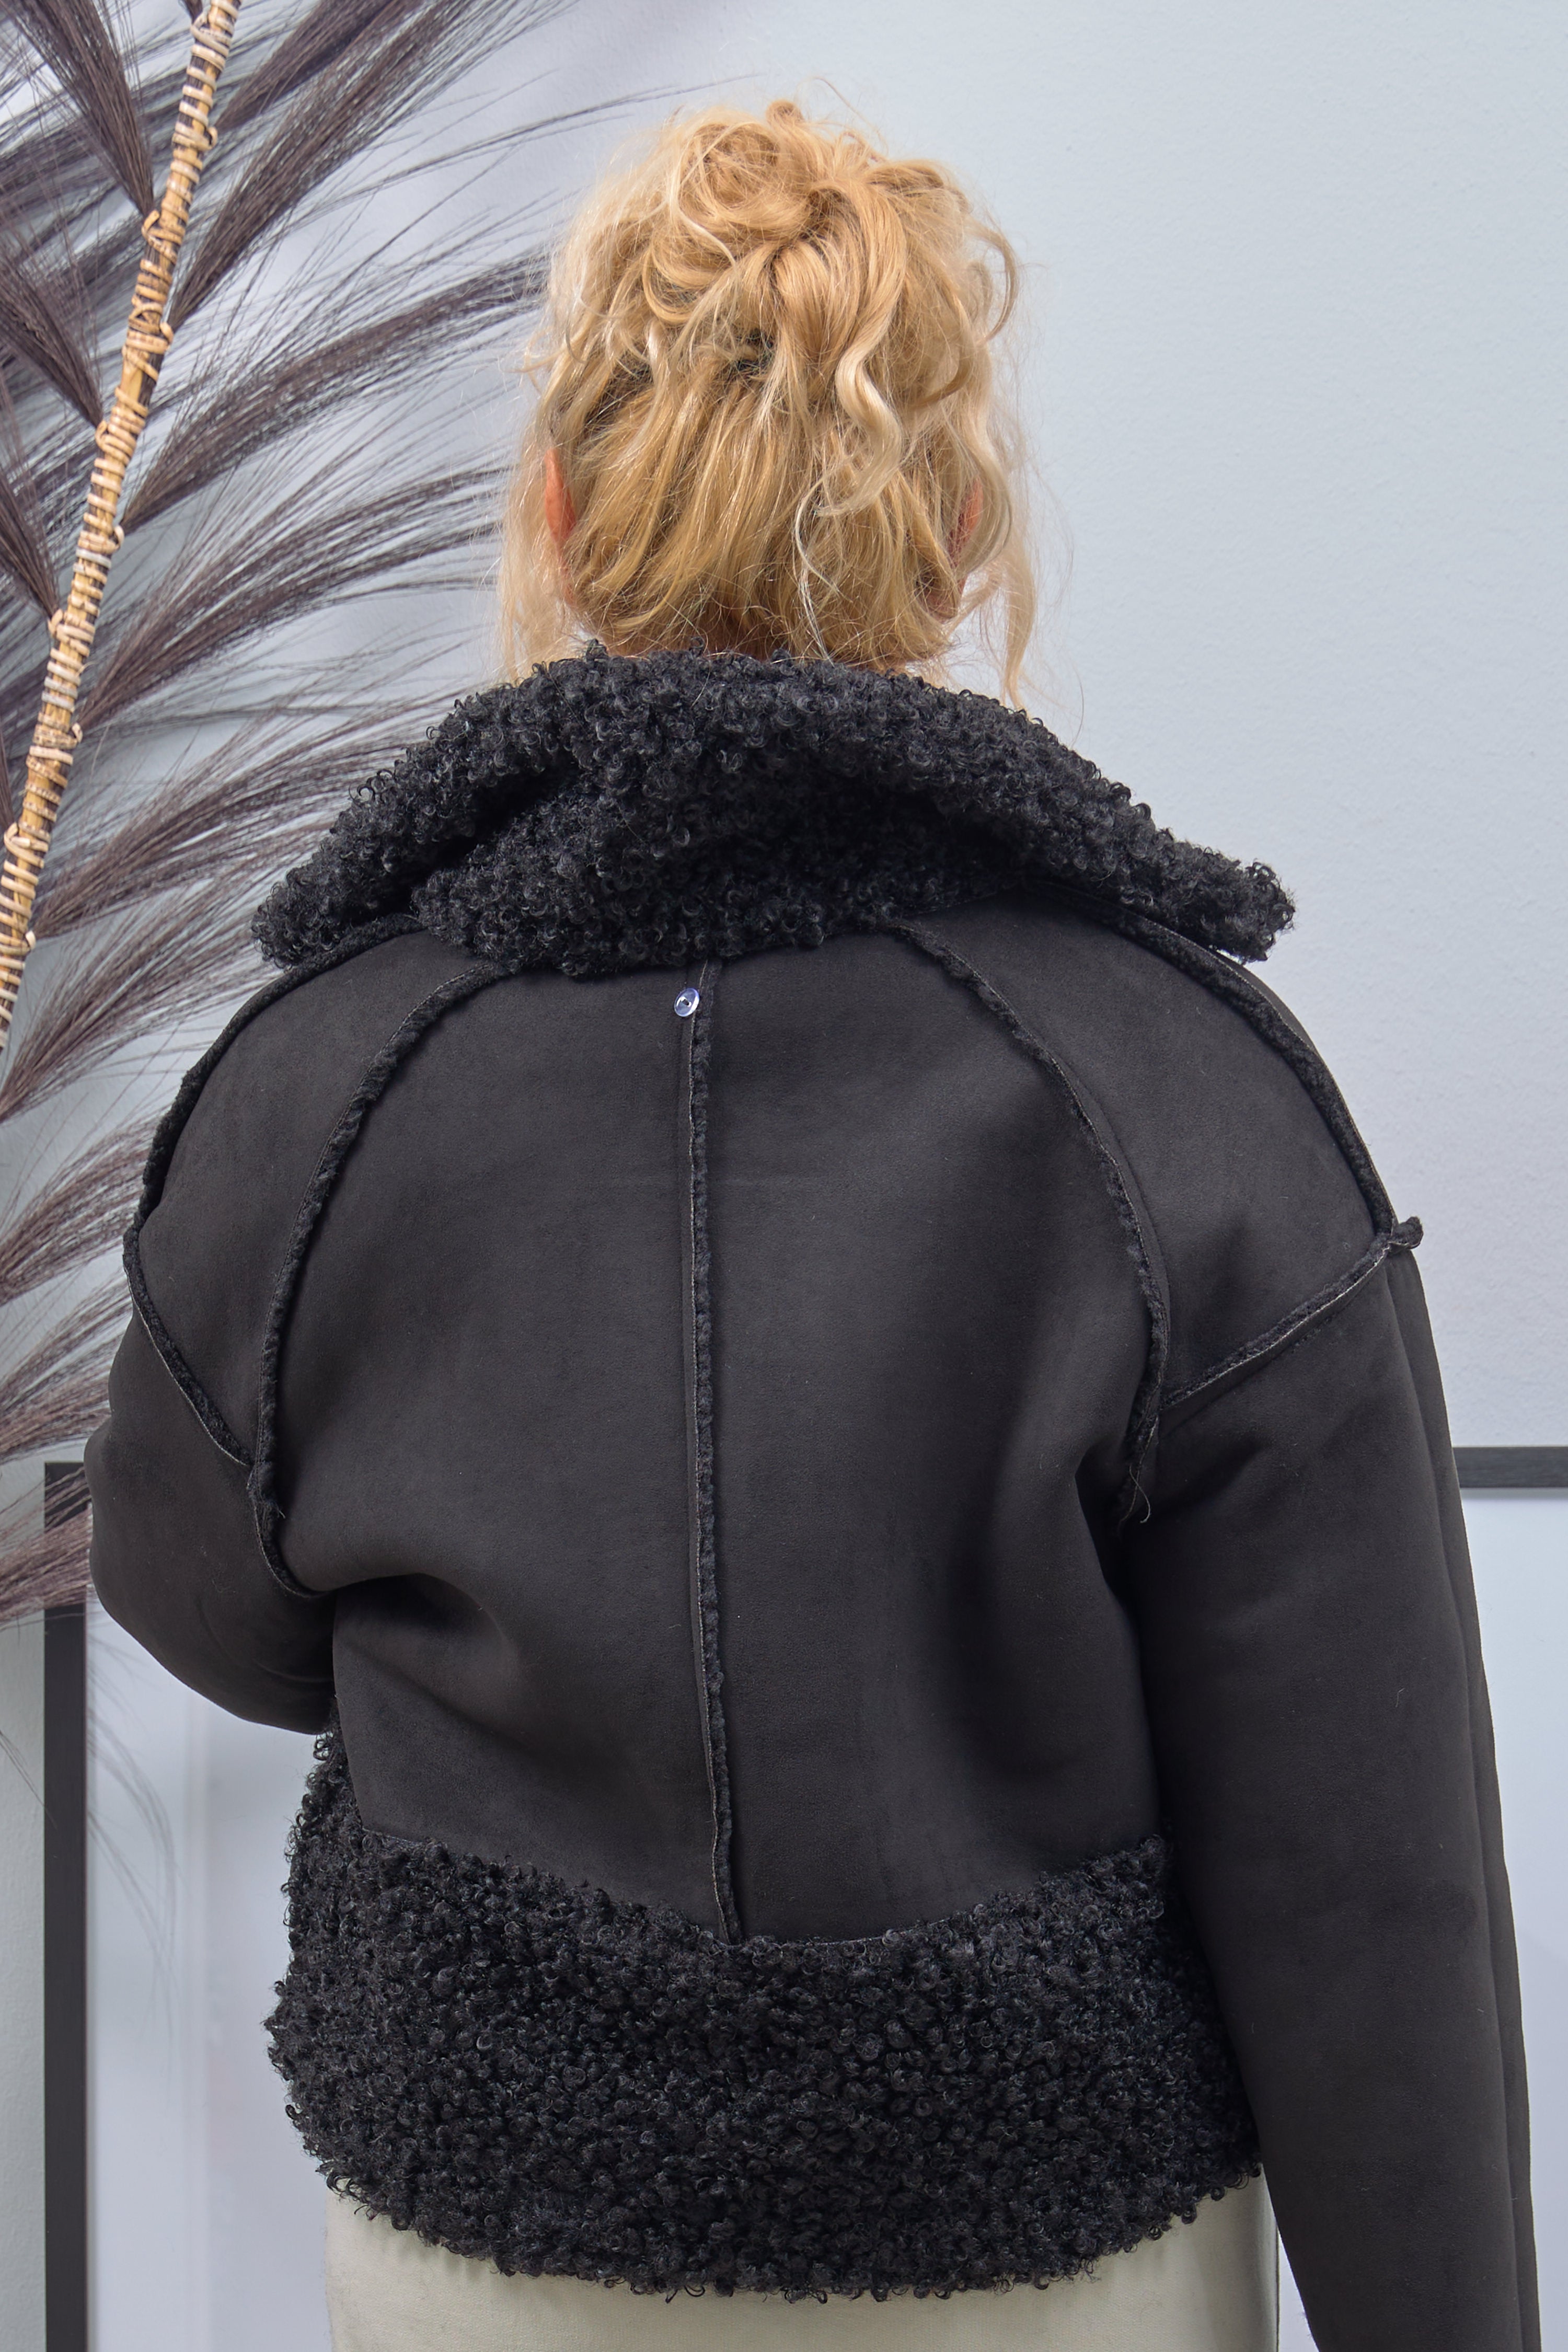 Reversible jacket in velour look, black